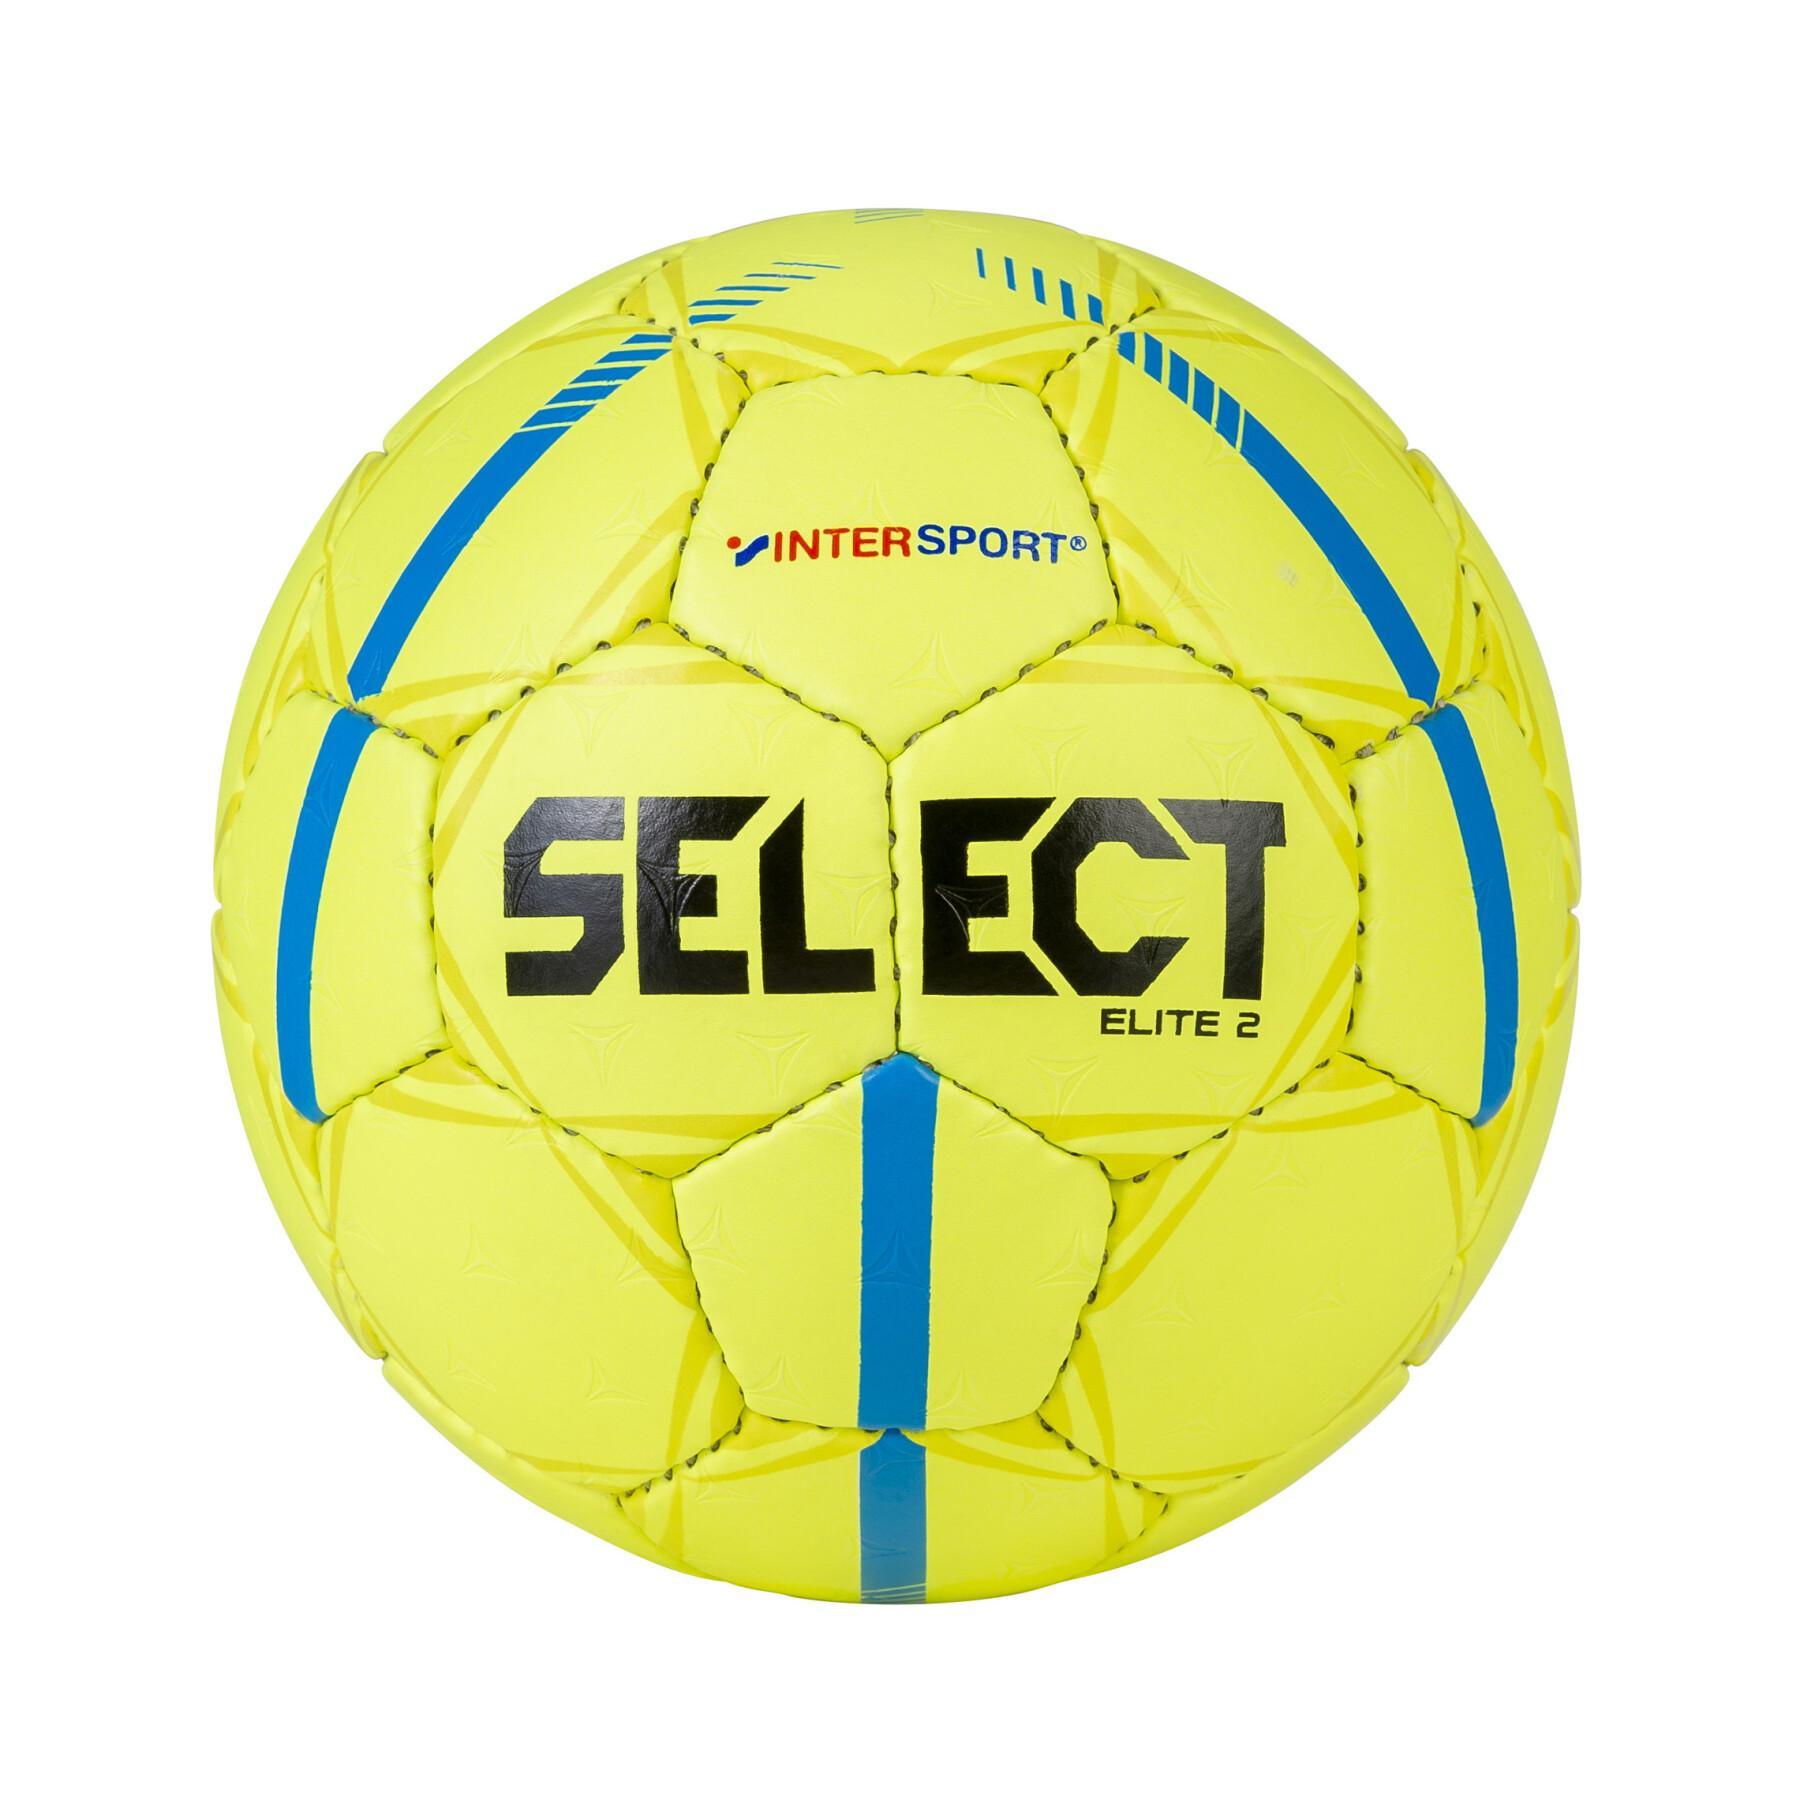 Balão Select Elite 2 Intersport